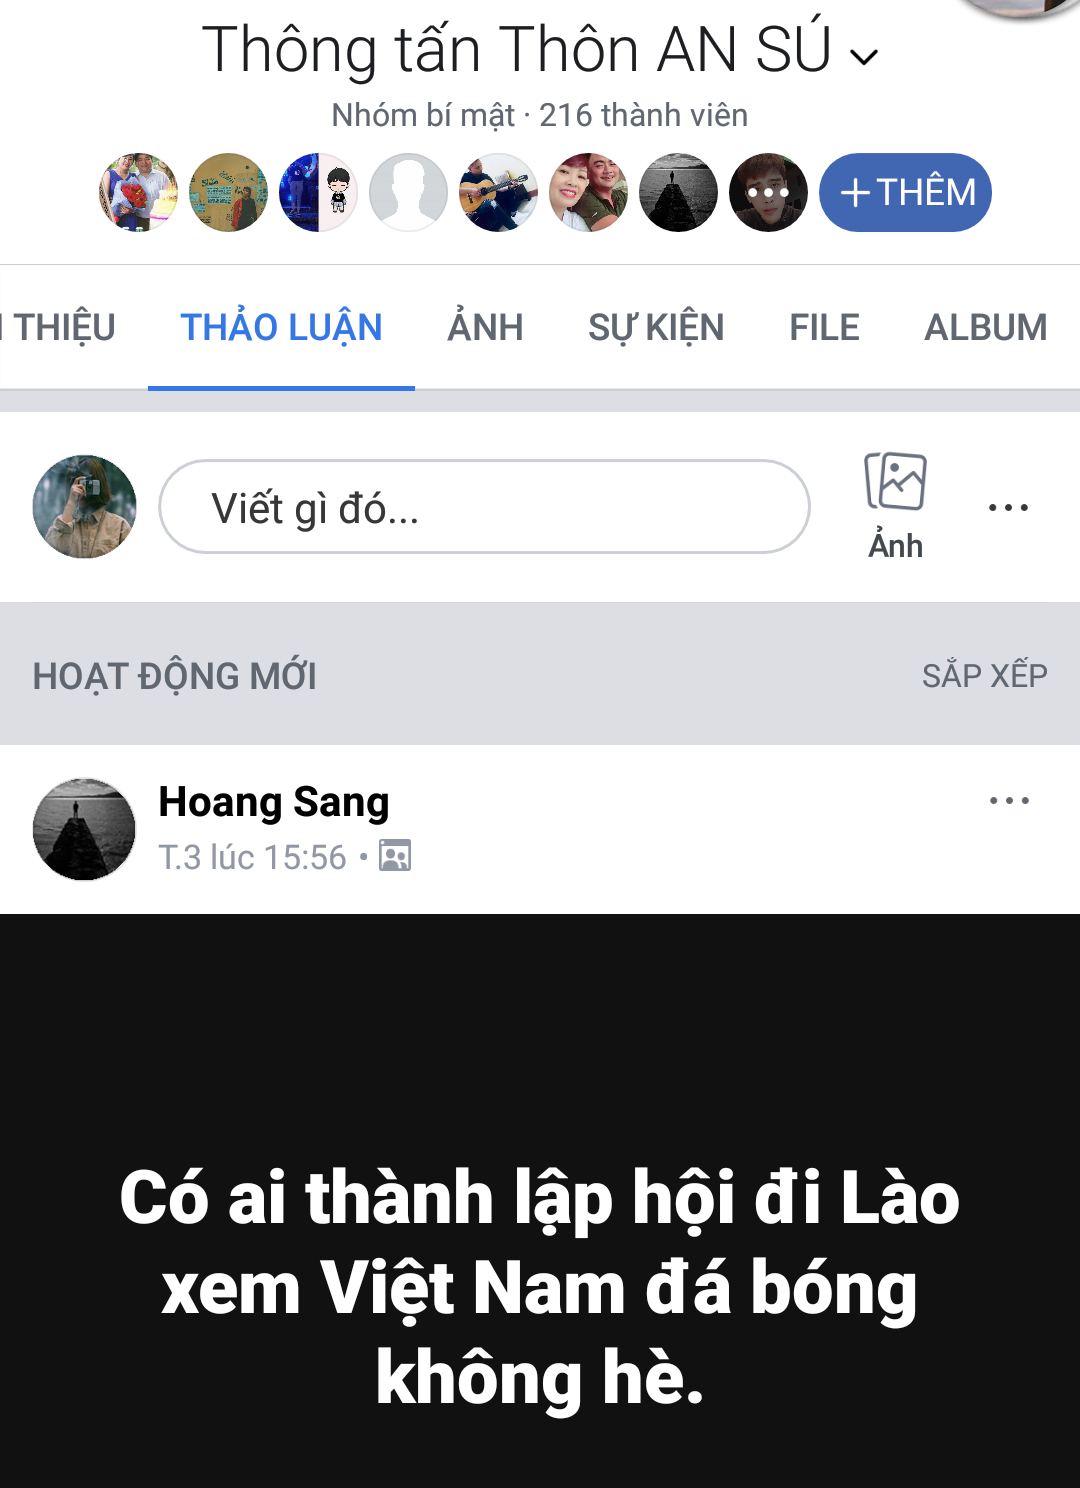 Lào vs Việt Nam: Truyện CĐV sang Lào cổ vũ ĐT Việt Nam đá AFF CUP 2018 - Ảnh 2.